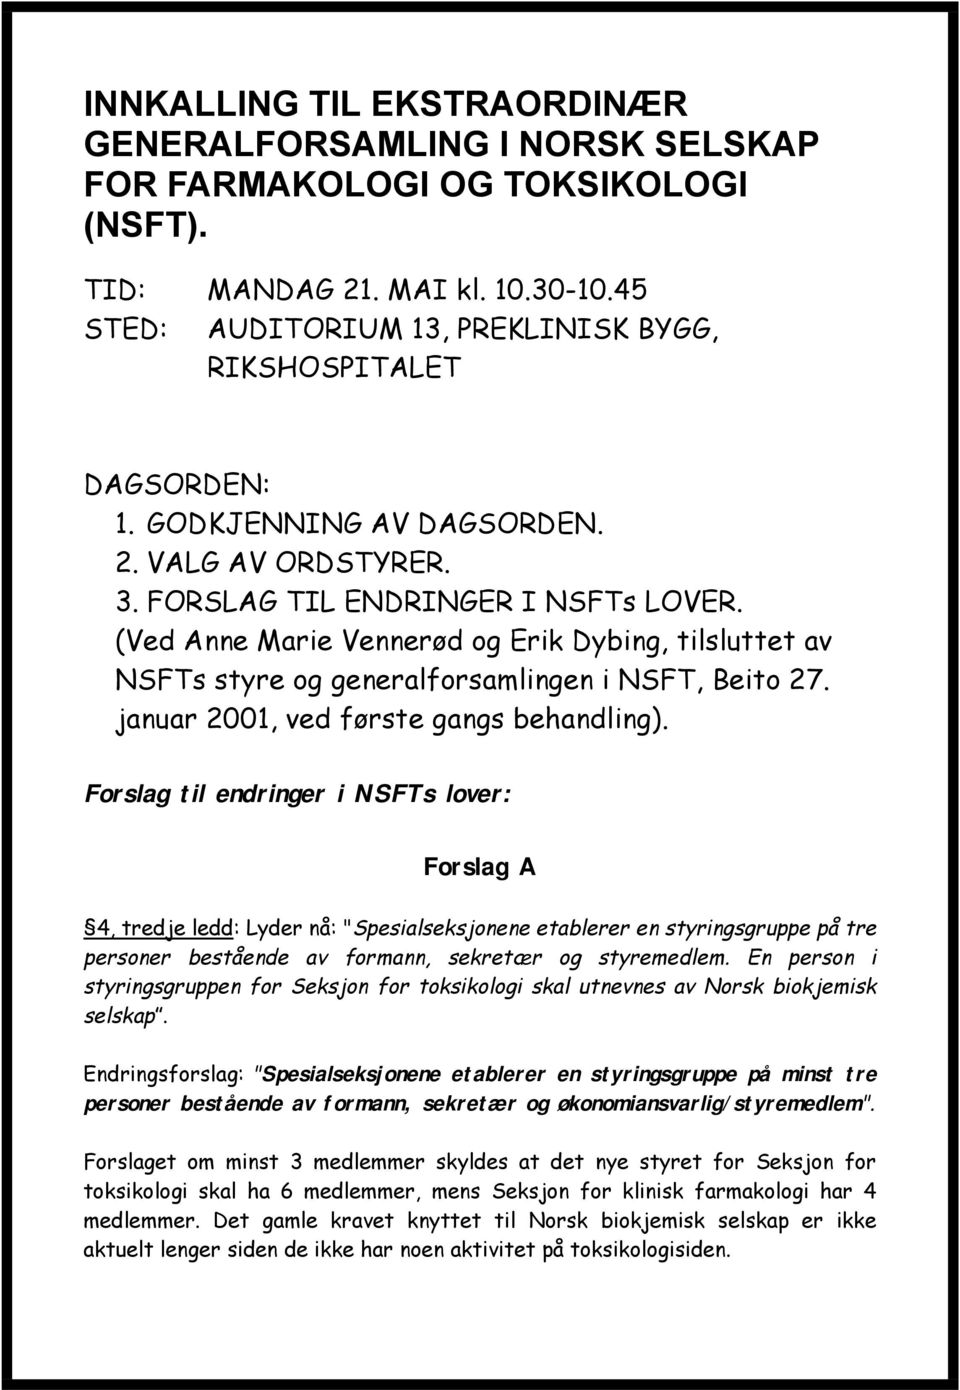 (Ved Anne Marie Vennerød og Erik Dybing, tilsluttet av NSFTs styre og generalforsamlingen i NSFT, Beito 27. januar 2001, ved første gangs behandling).